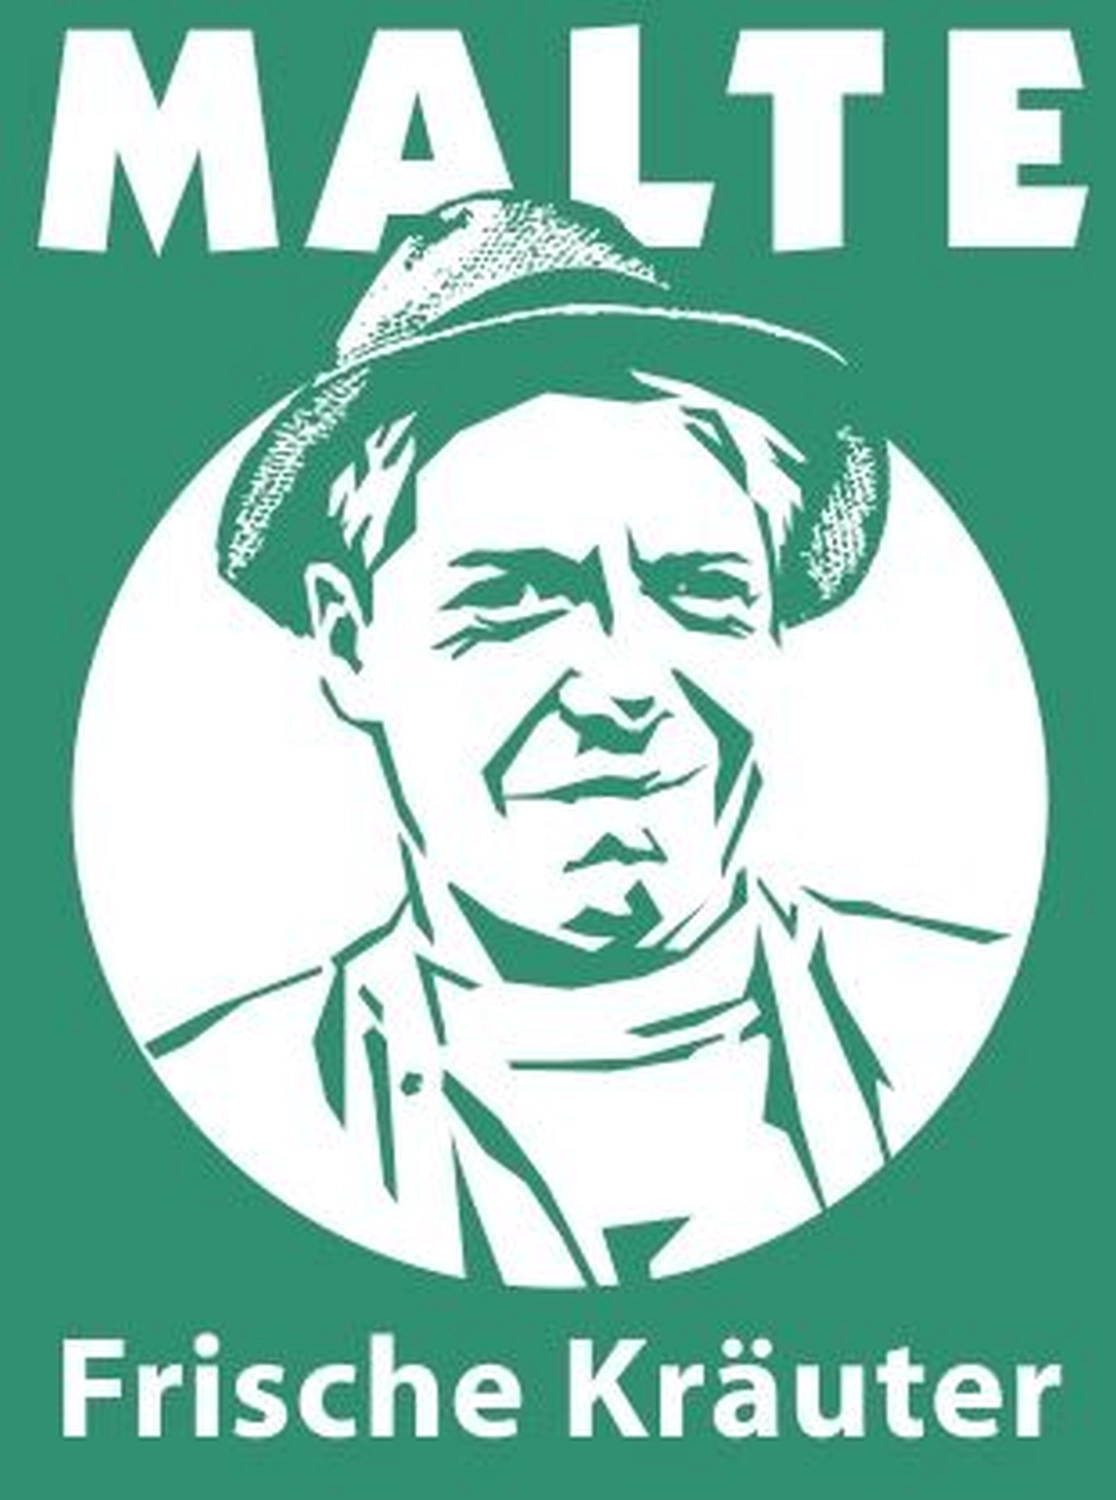 Malte Logo